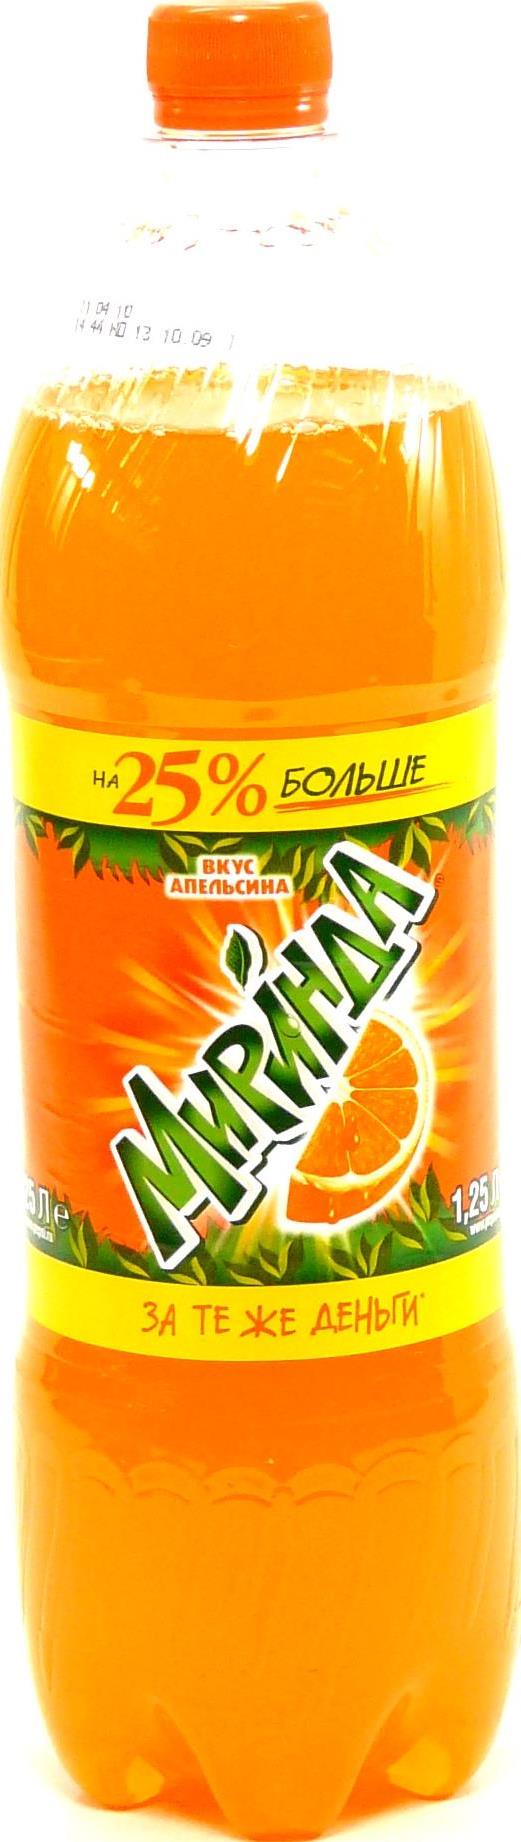 Напиток Mirinda orange газированный